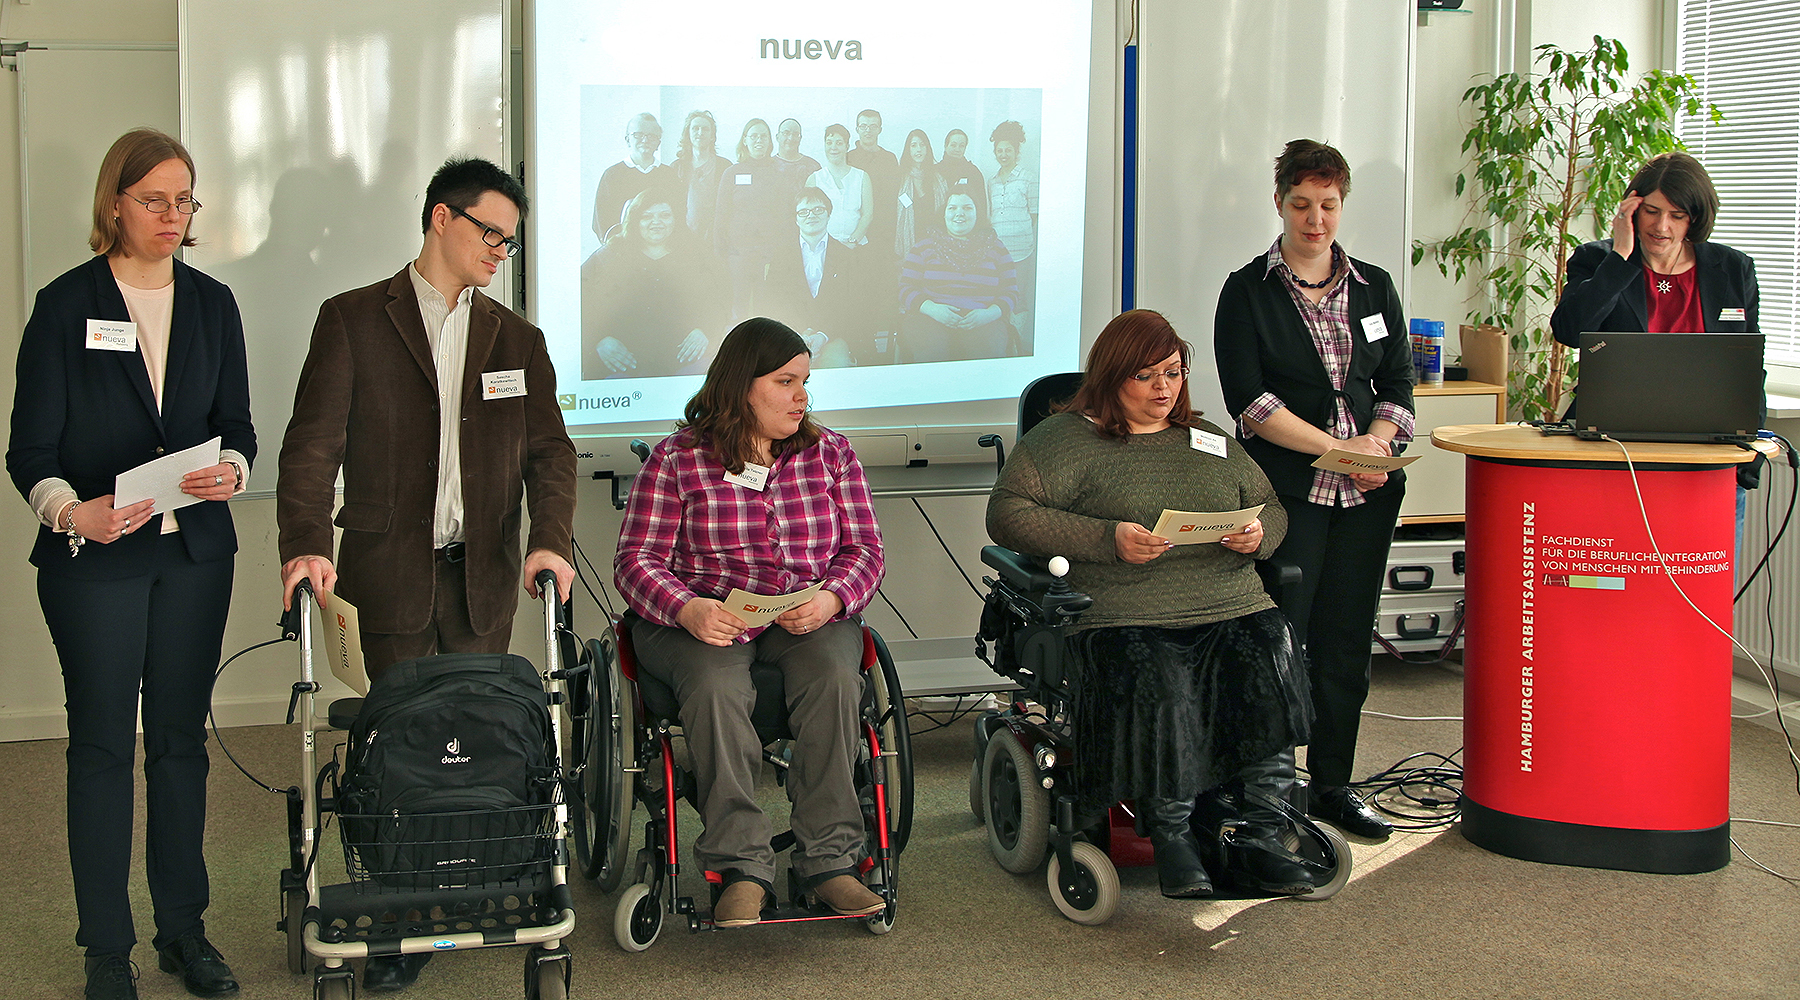 5 Team-Mitglieder von GUT GEFRAGT präsentieren nueva auf einer Veranstaltung. Die Gruppe besteht aus einem Evaluator und 3 Evaluatorinnen mit Behinderung und einer Mitarbeiterin am Pult.